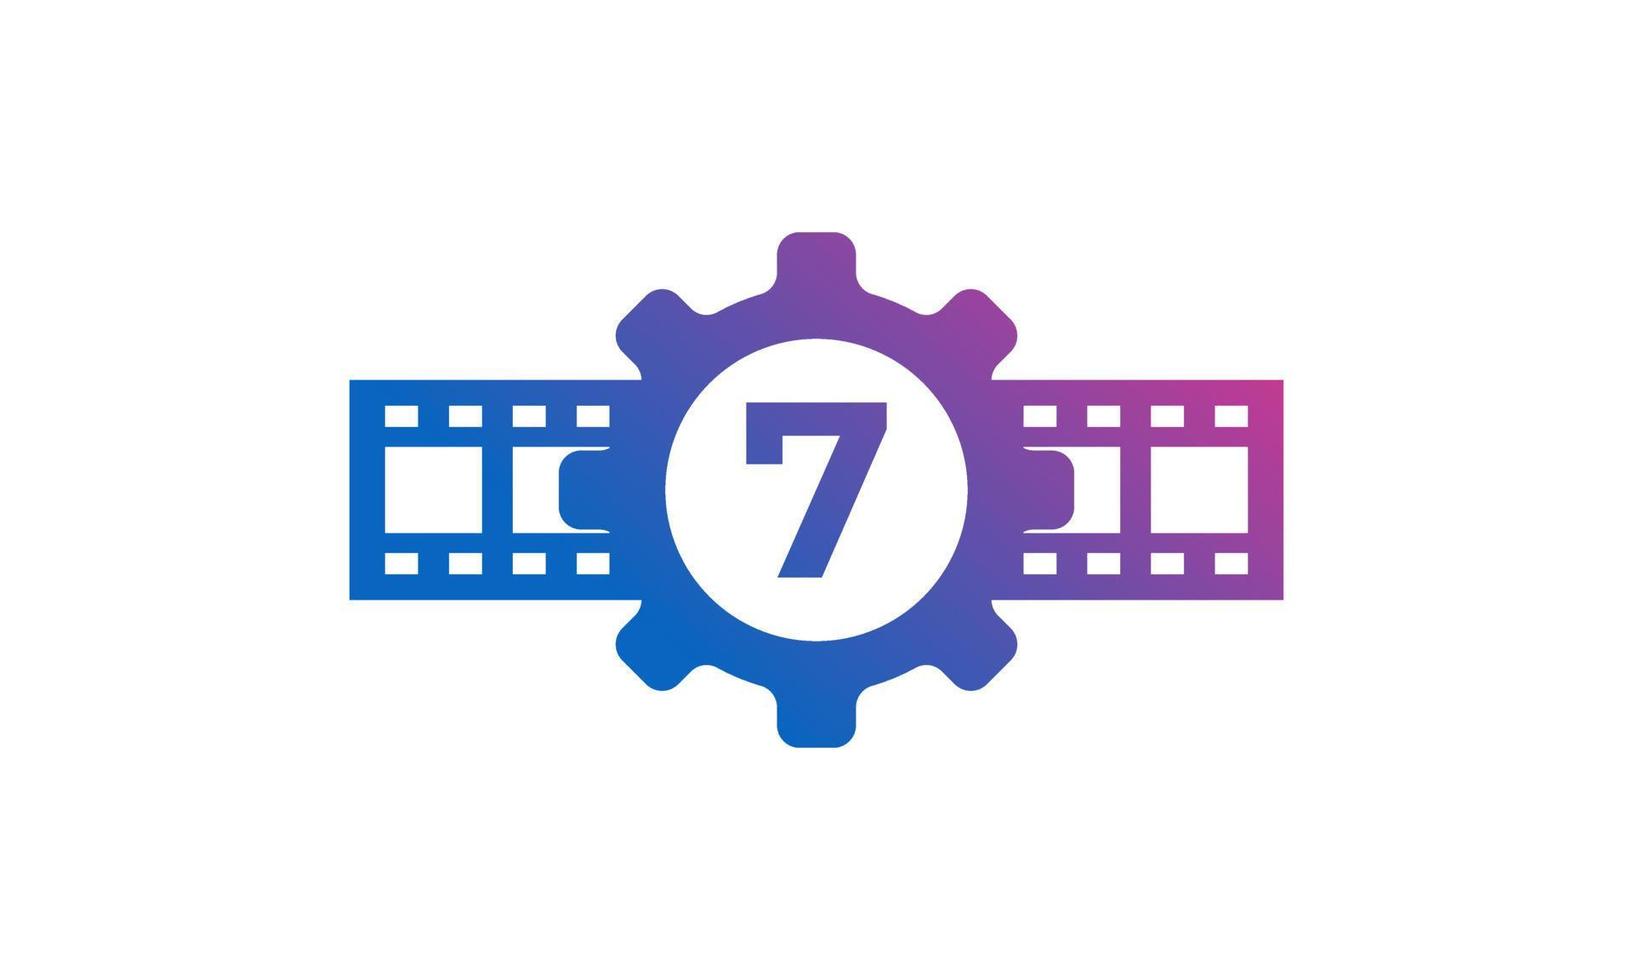 nummer 7 kugghjul med rulleränder filmremsa för film film filmproduktion studio logotyp inspiration vektor